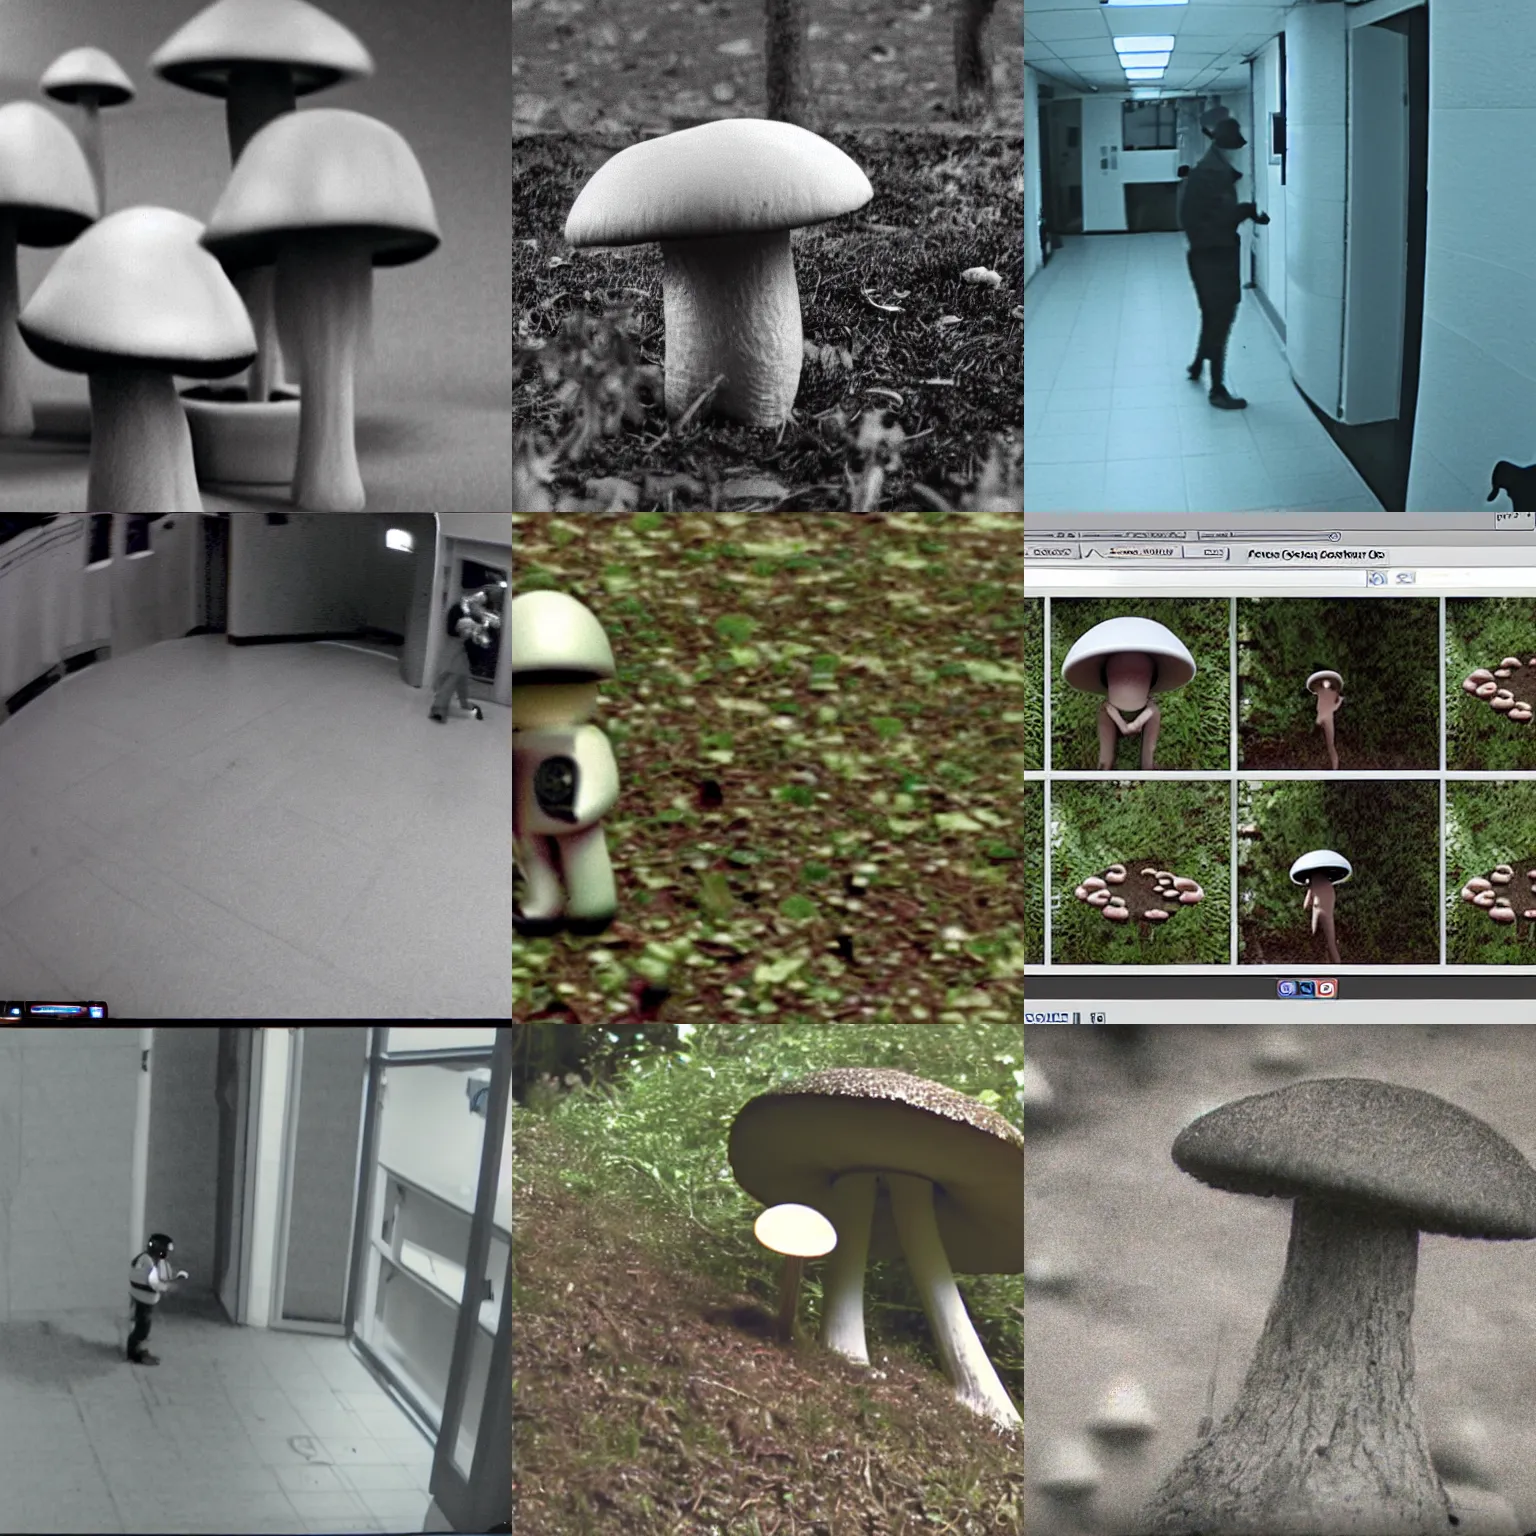 Prompt: security cam footage of a mushroom humanoid